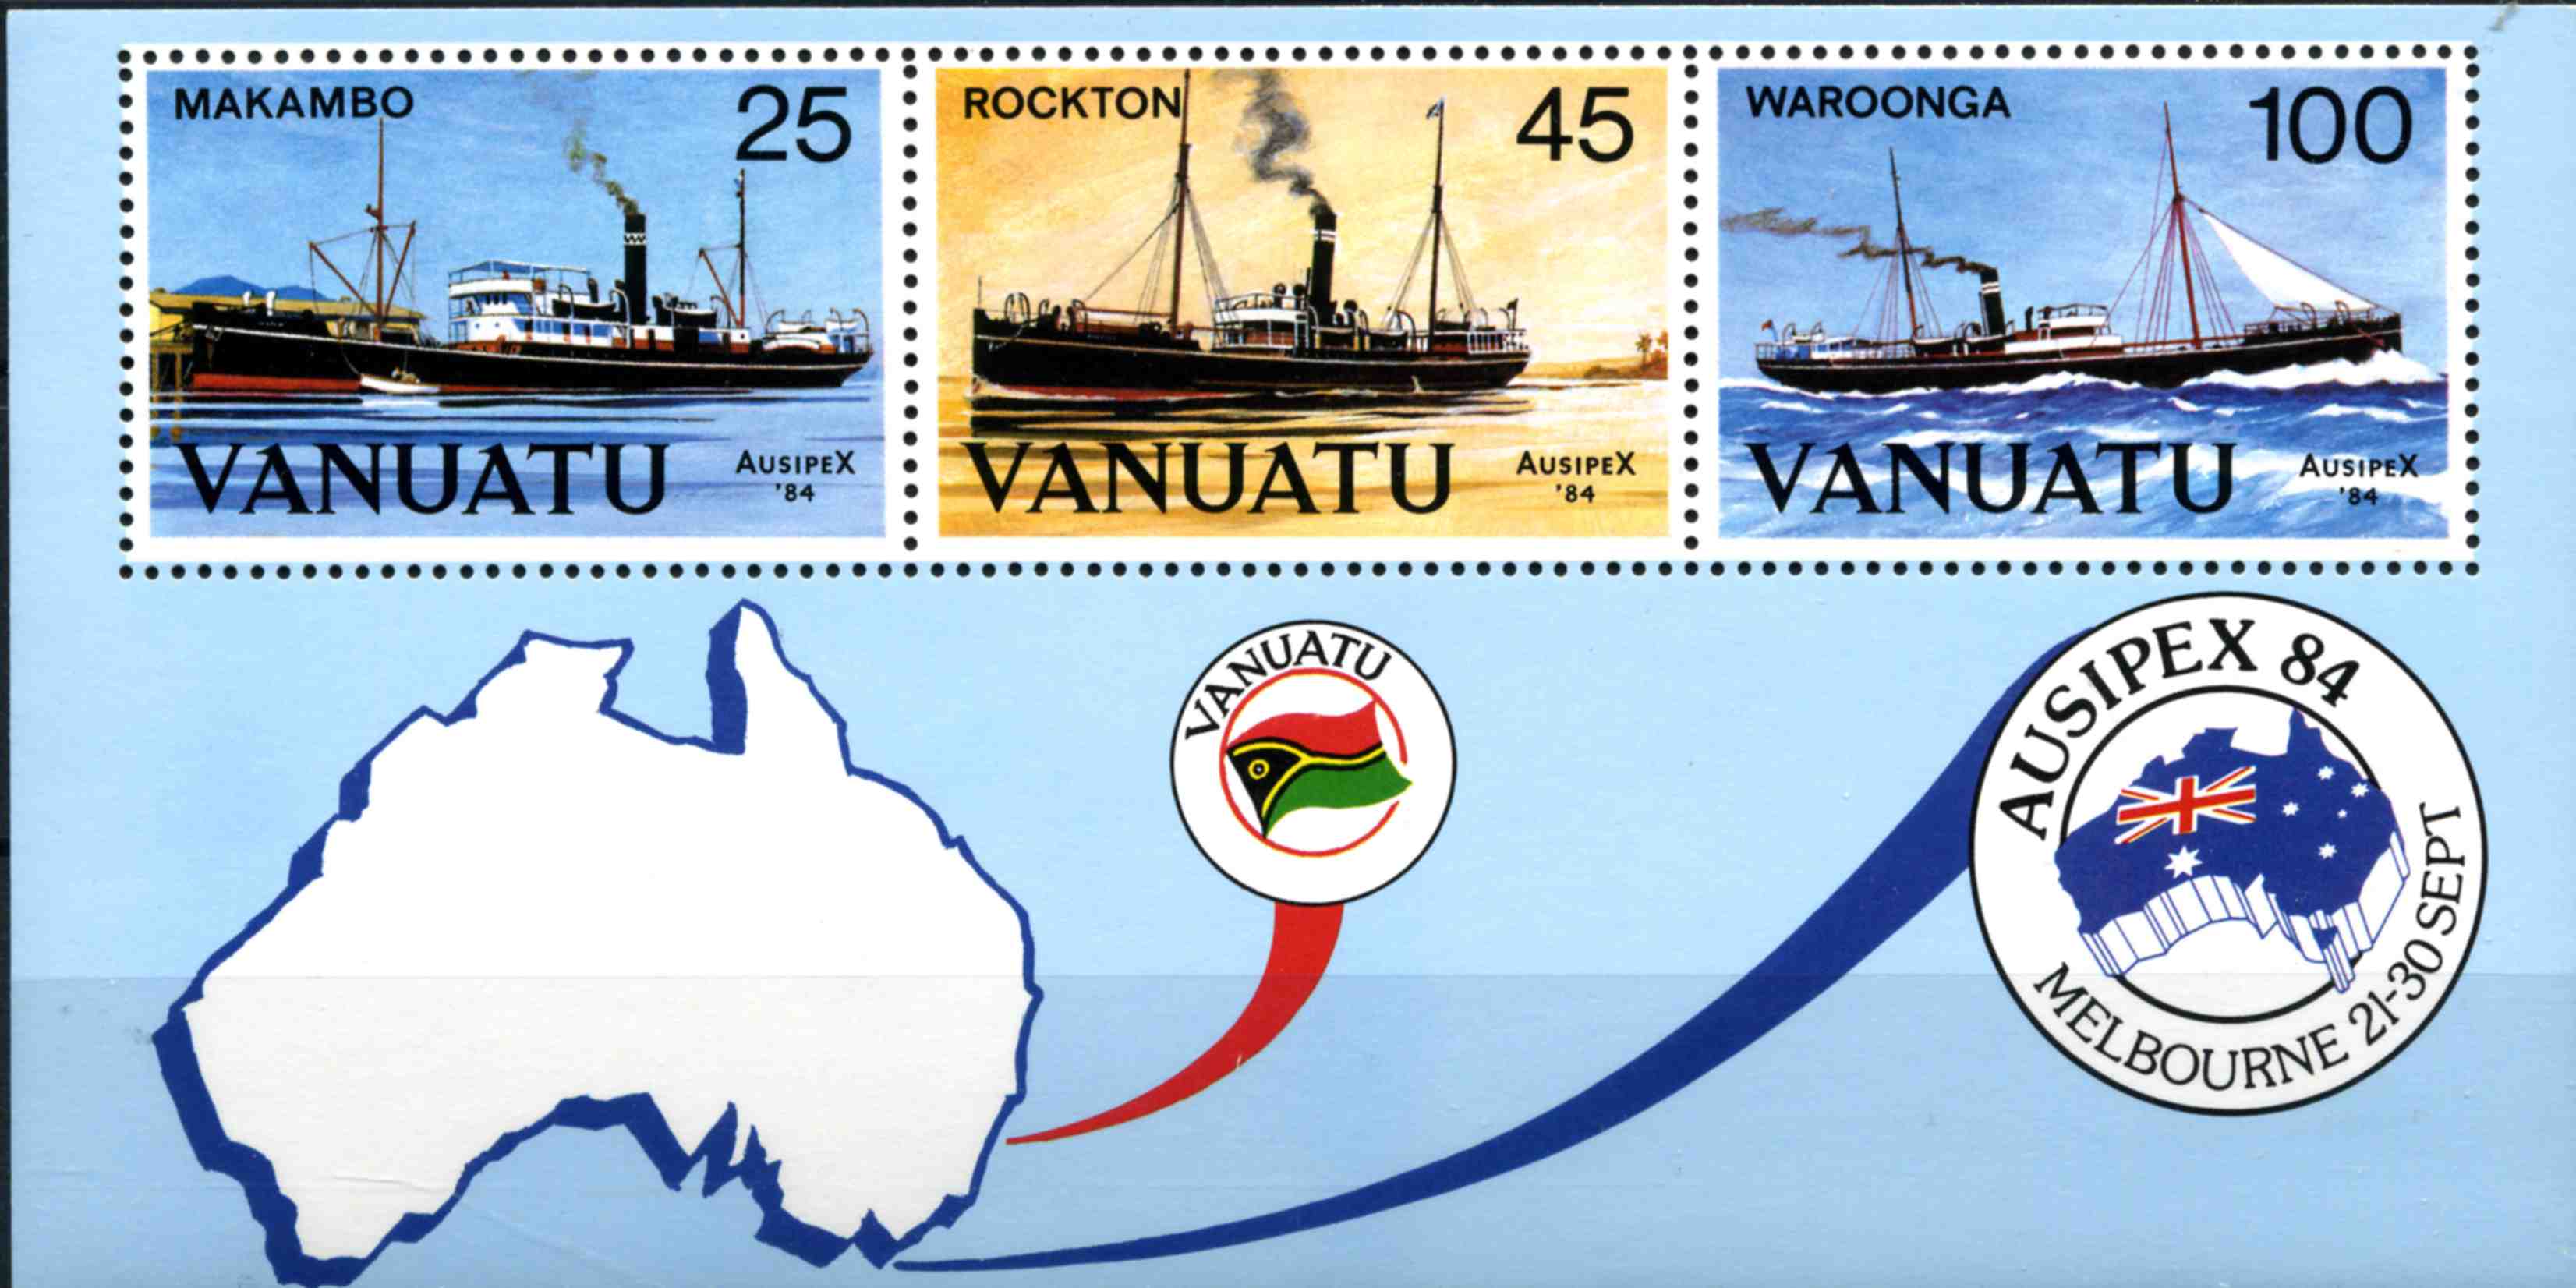  Vanuatu 1984 AUSIPEX 84 Exposition philatélique mondiale à Melbourne (feuillet)